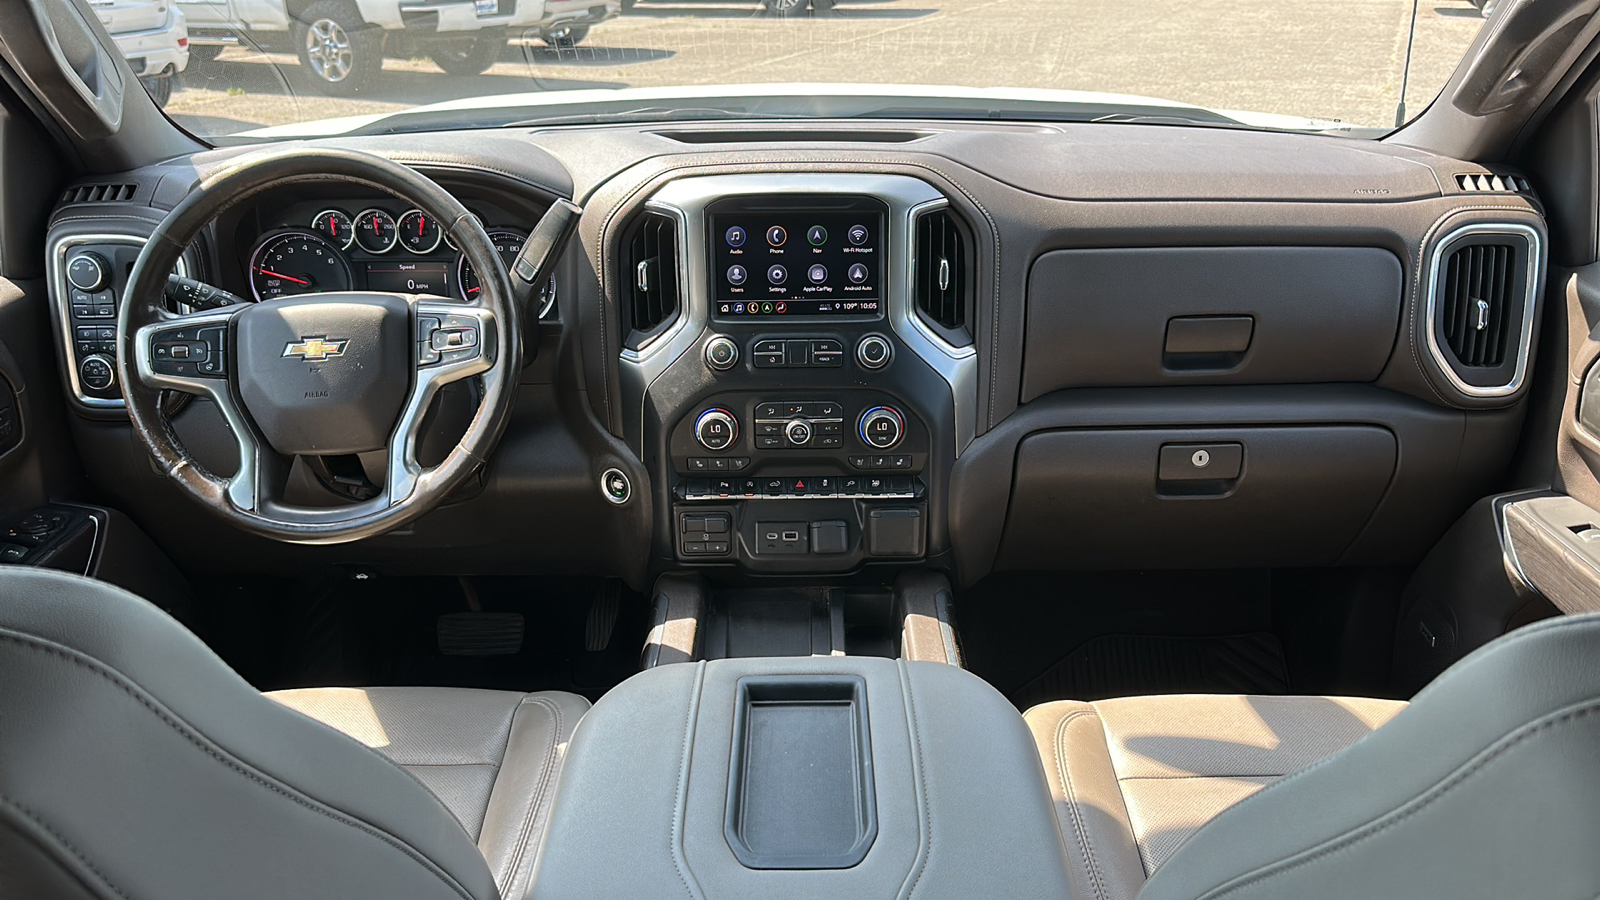 2019 Chevrolet Silverado LTZ 10